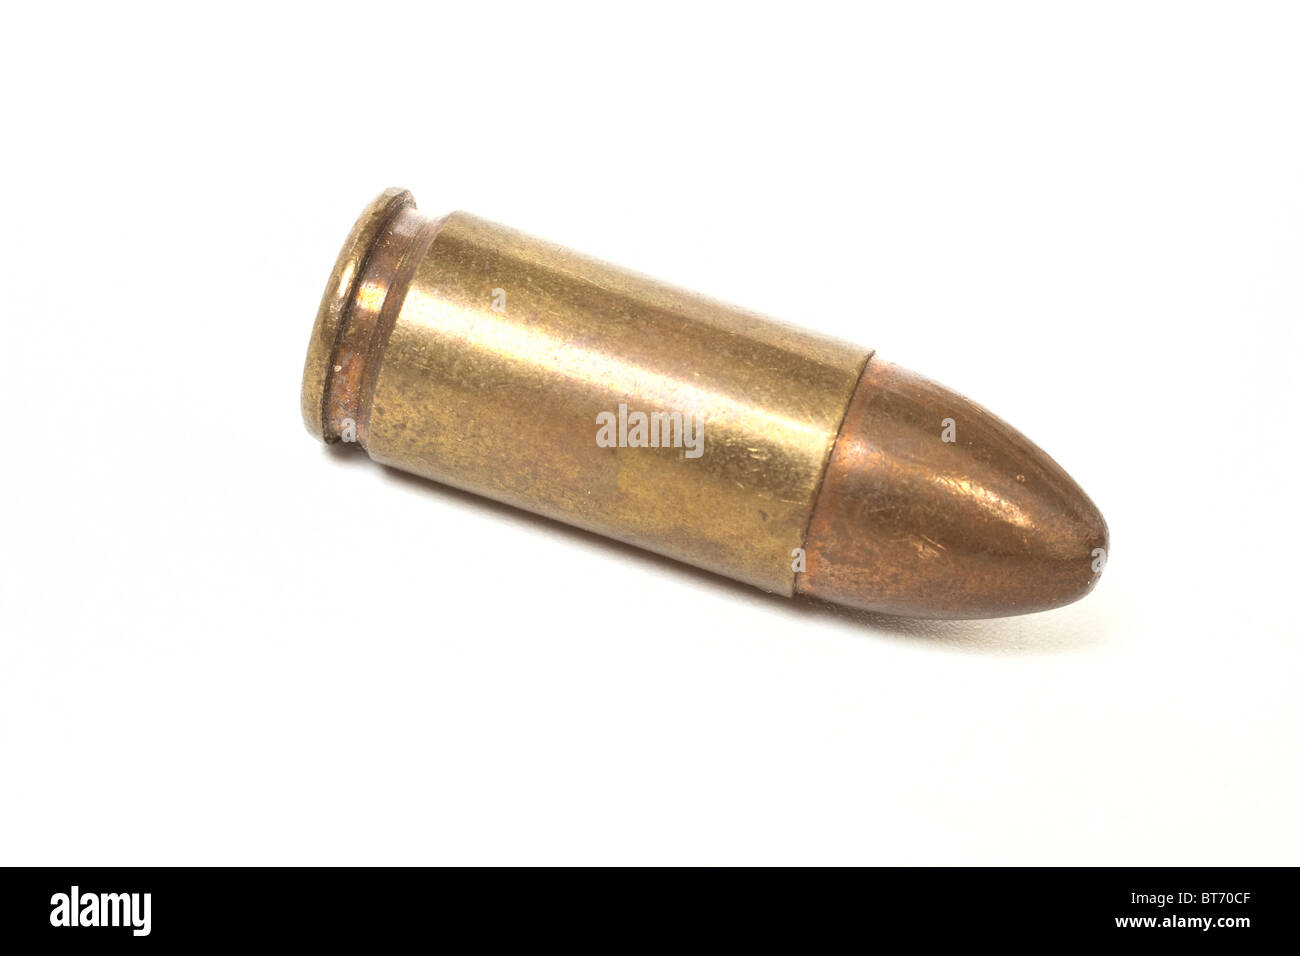 9mm bullet aislado sobre fondo blanco. Foto de stock